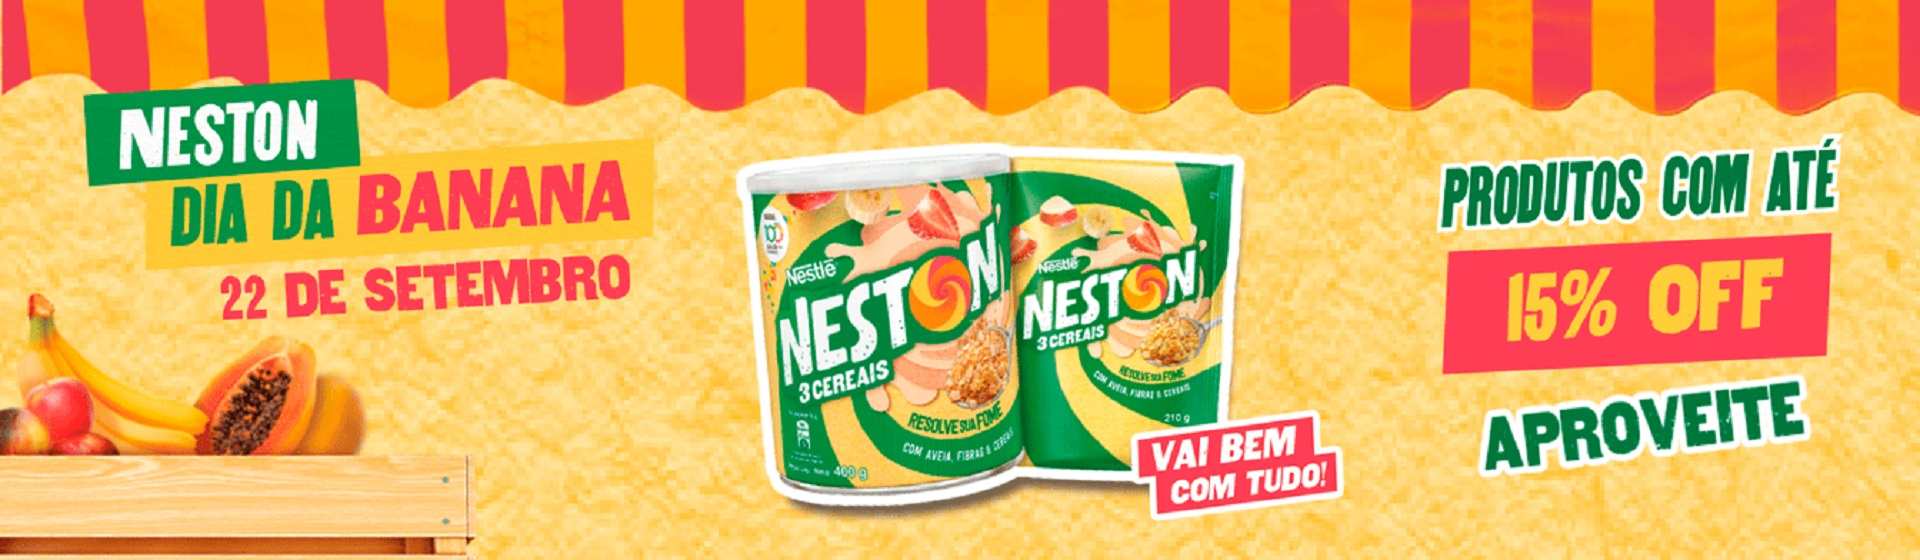 Nestle - Dia da banana com Neston - 19/09 a 25/09